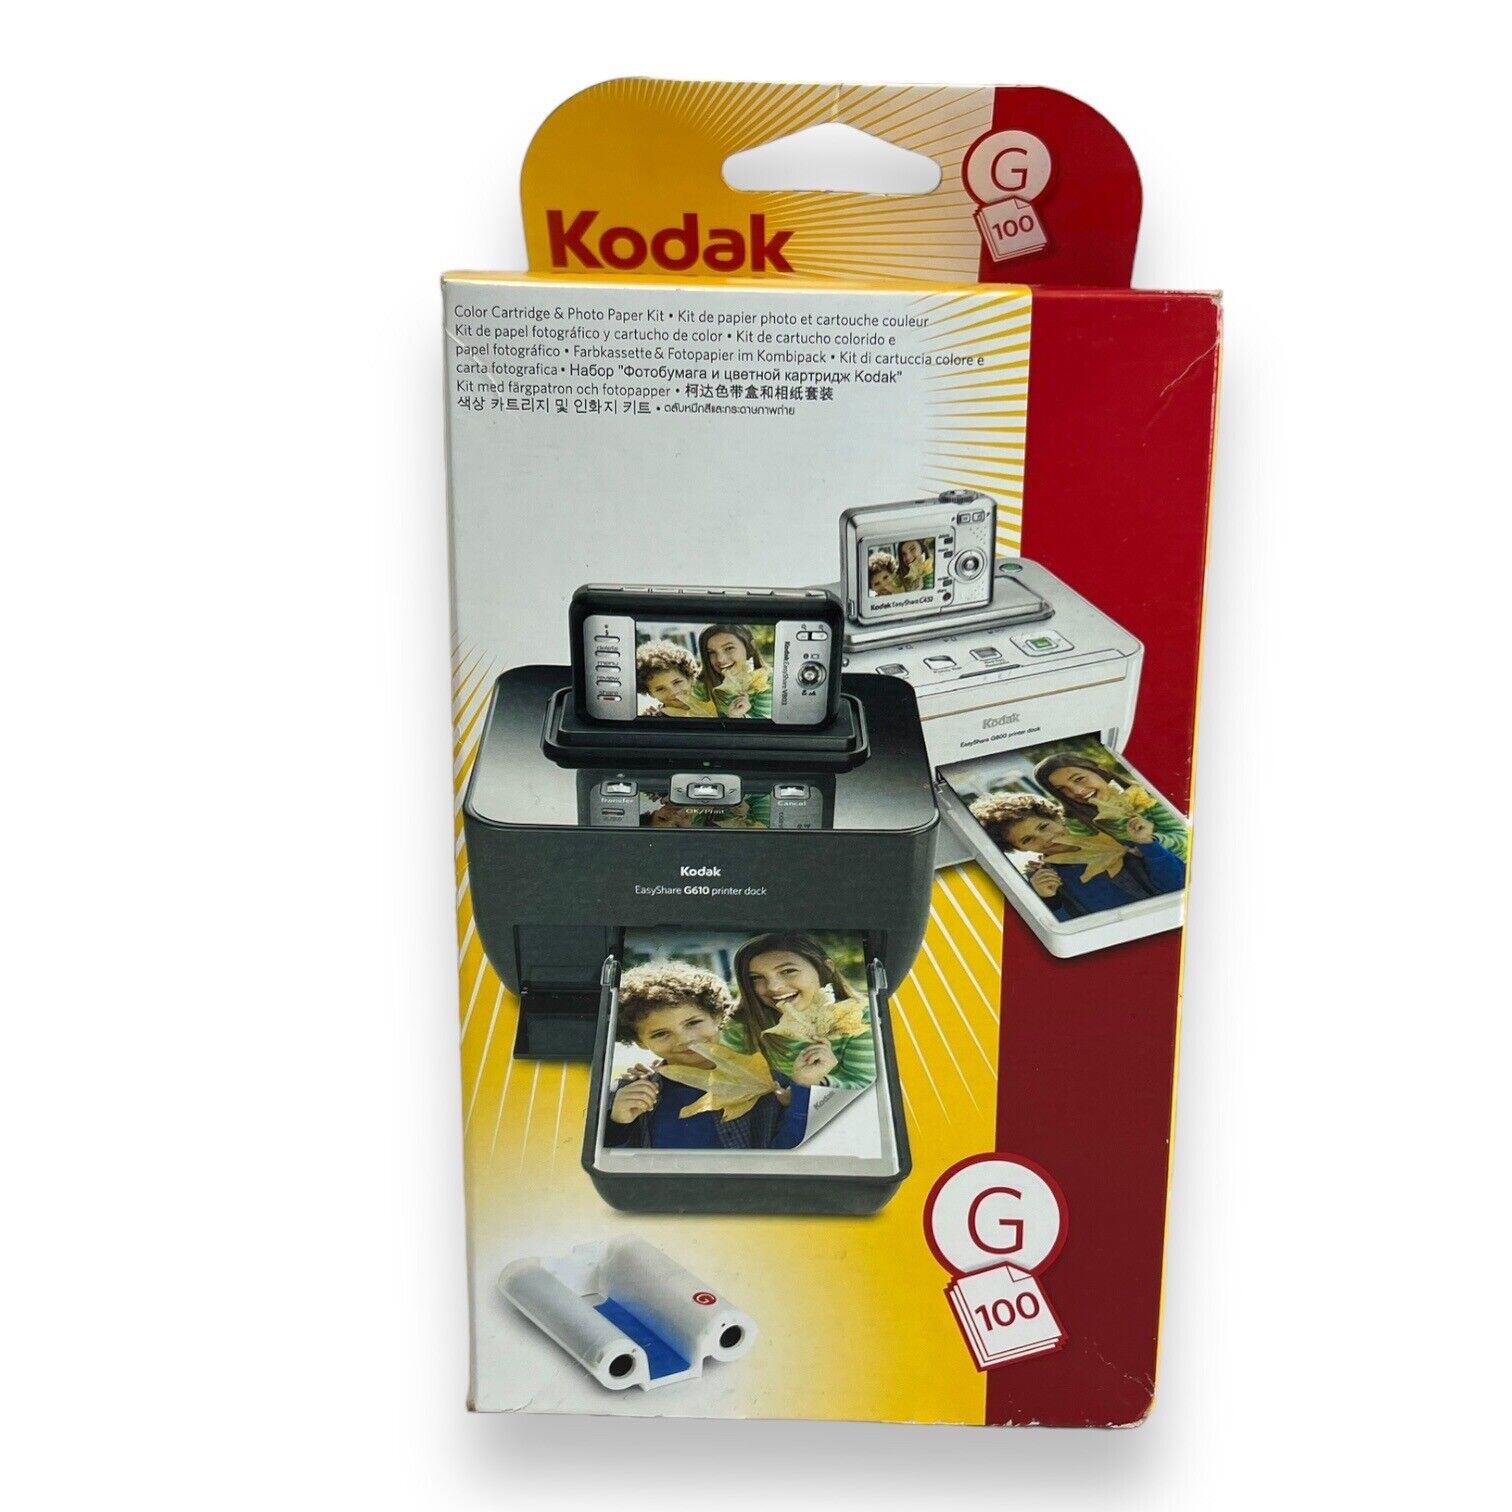 Kodak G-100 Easy Share Printer Dock Color Cartridge & Photo Paper Refill Kit